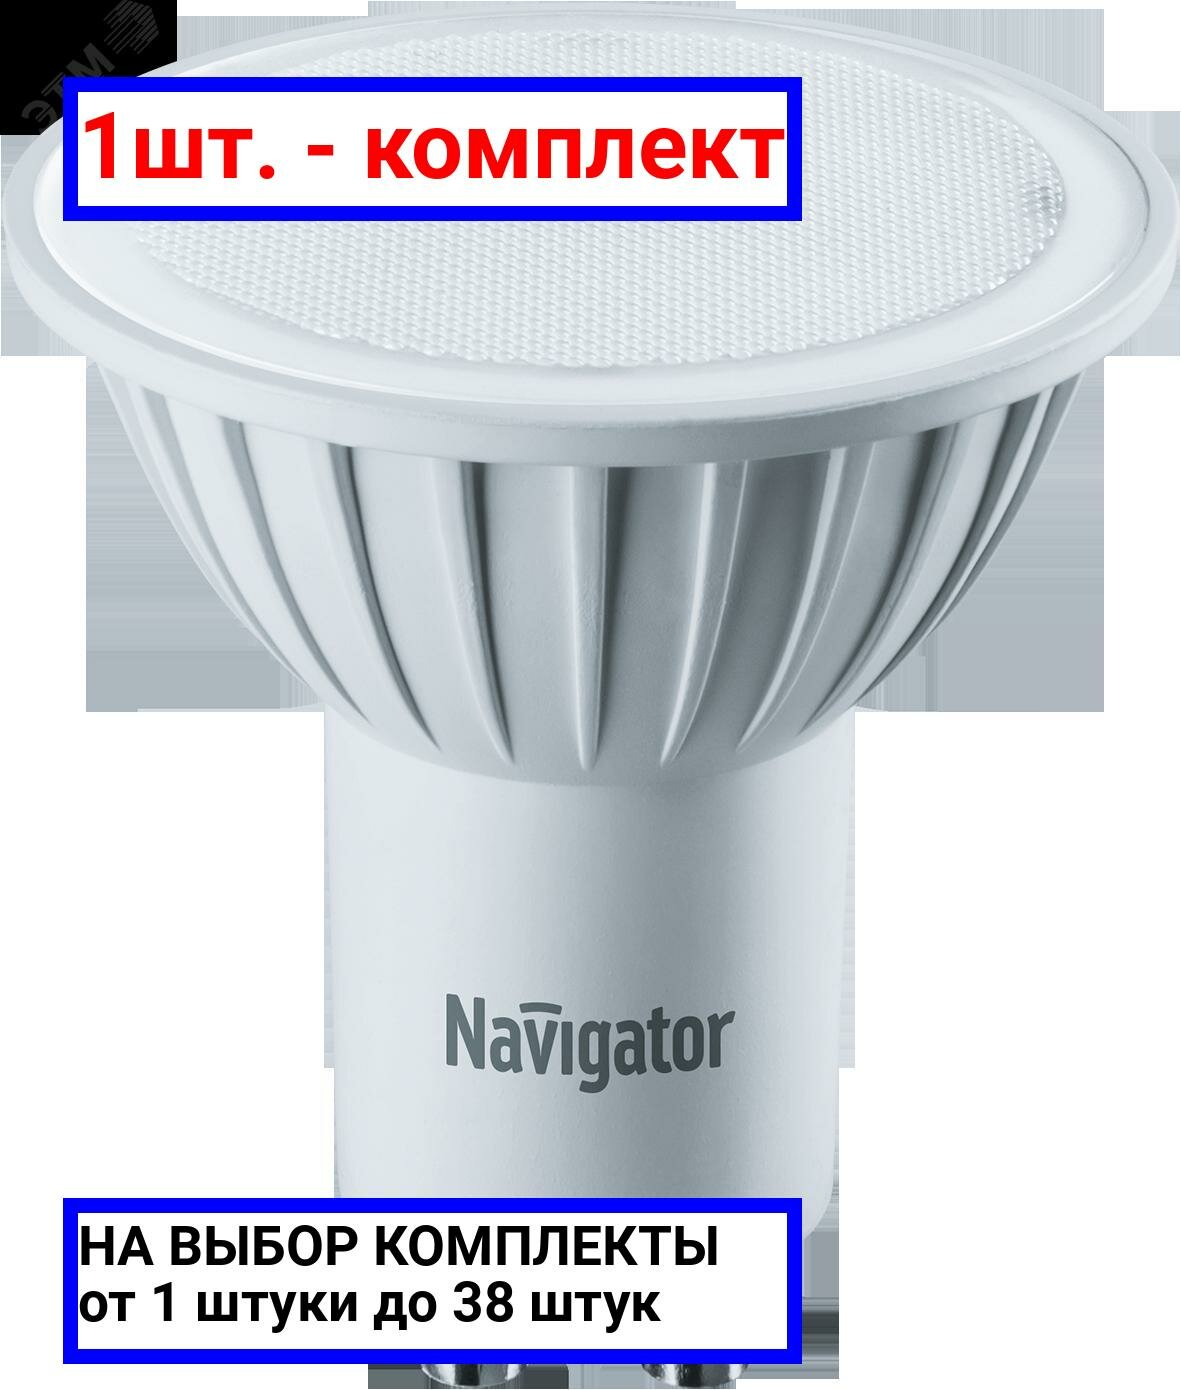 1шт. - Лампа светодиодная LED 3вт 230в GU10 тепло-белая / Navigator Group; арт. 94256 NLL-PAR16; оригинал / - комплект 1шт